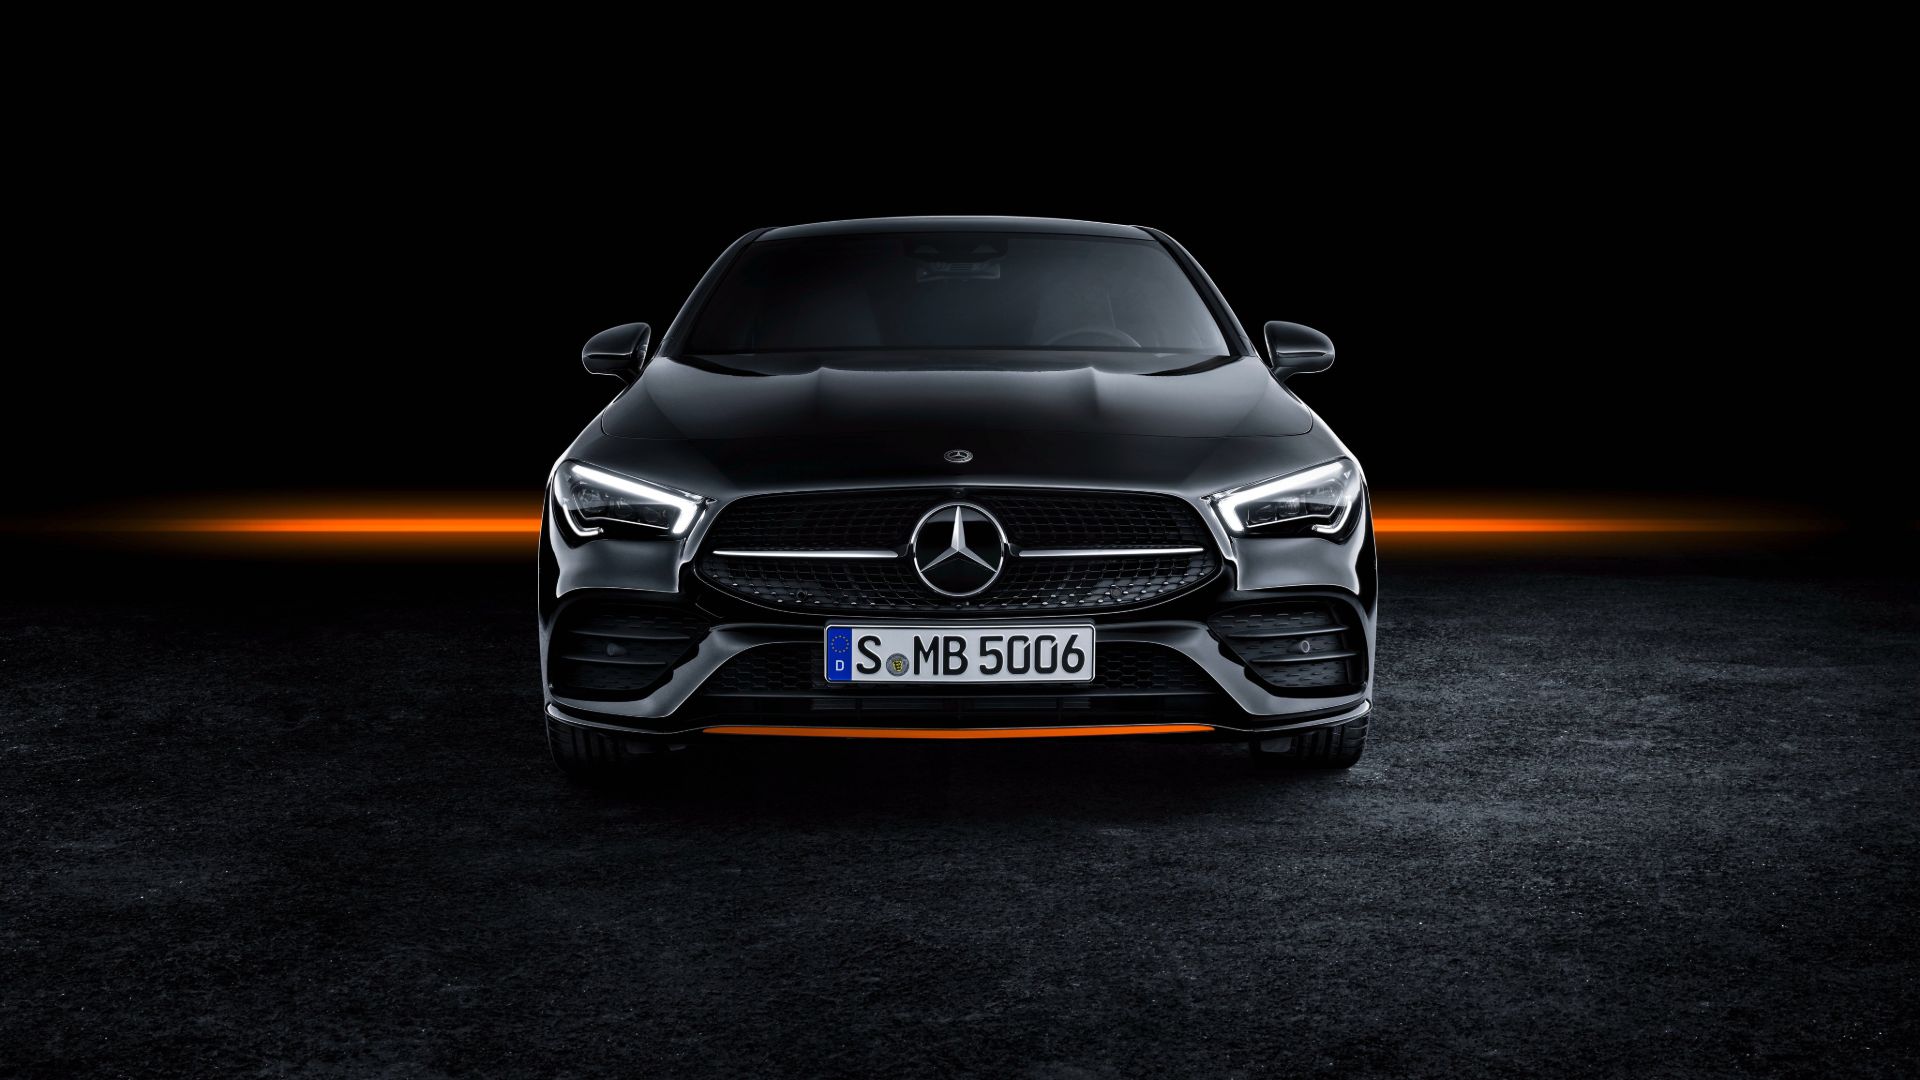 Mercedes Benz Wallpapers - Top 35 Best Mercedes Benz Backgrounds Download